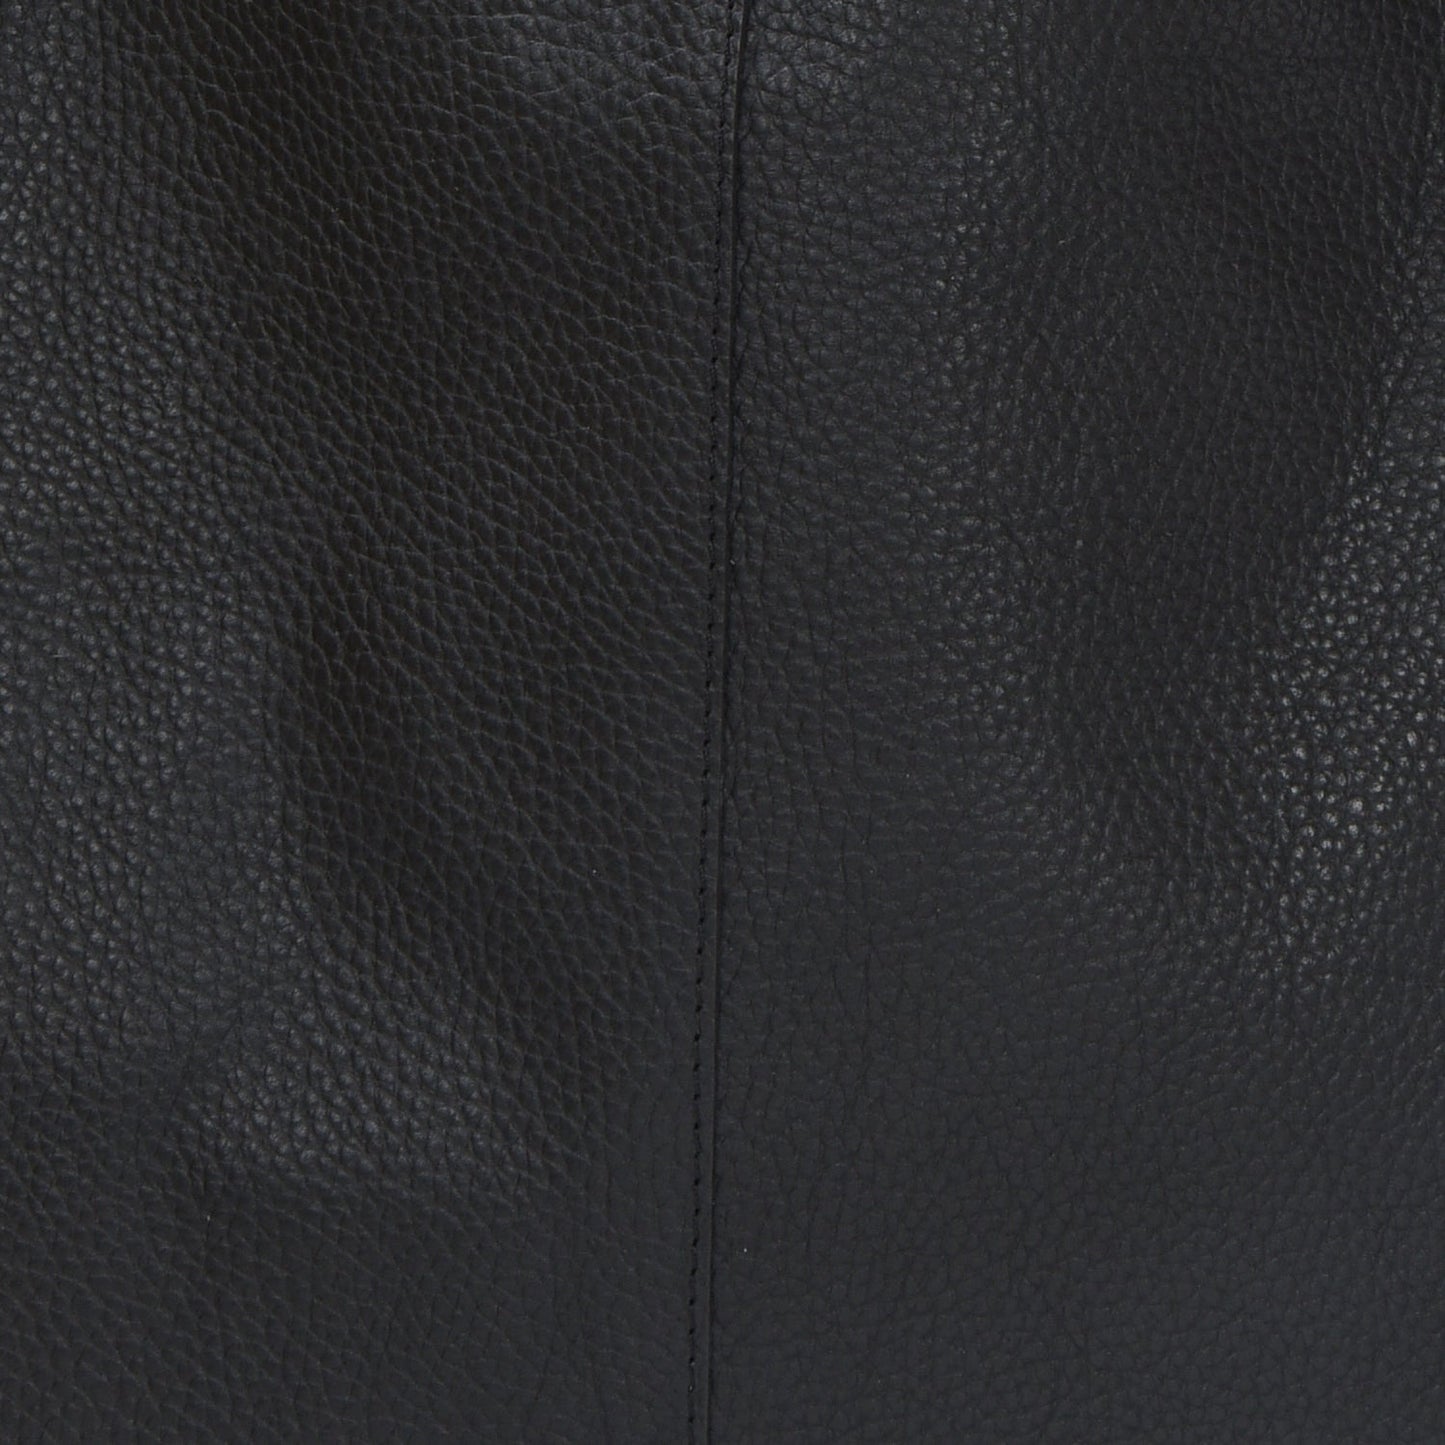 Black Pocket Boho Leather Bag